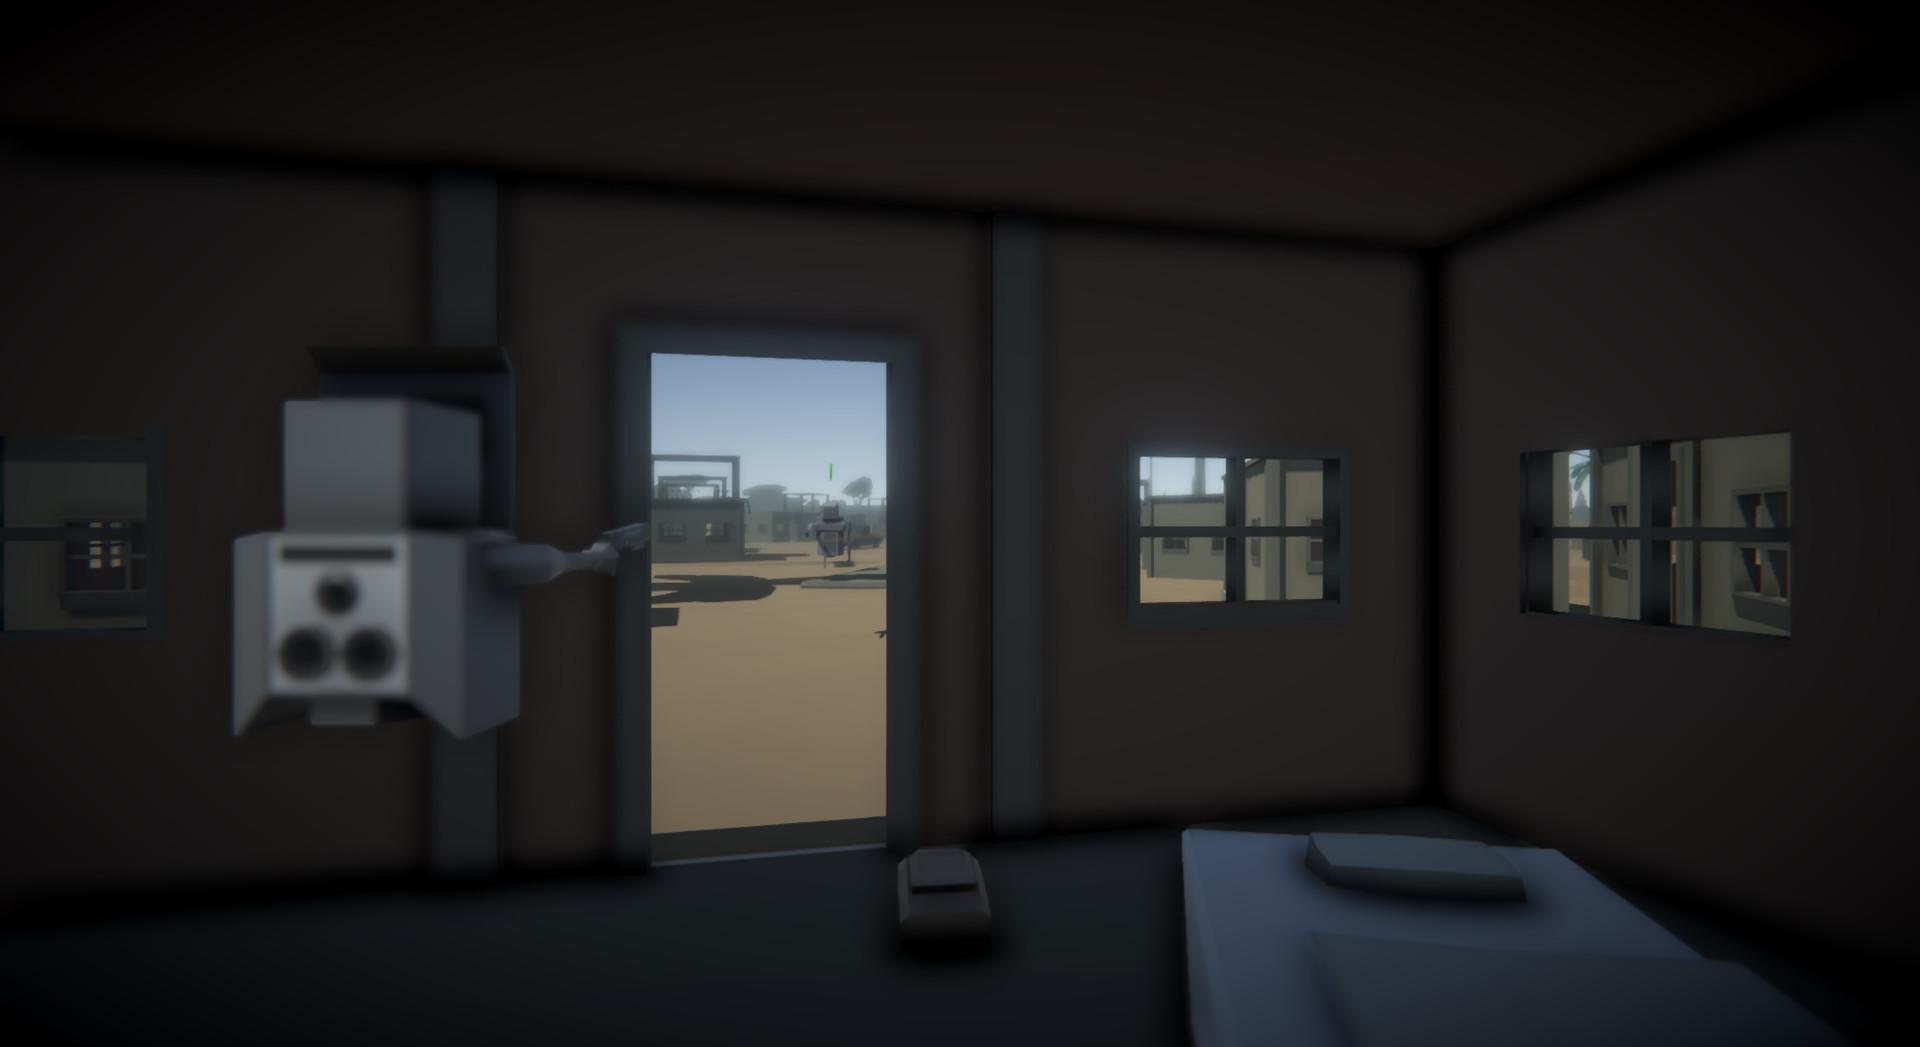 Screenshot №3 from game MiDZone